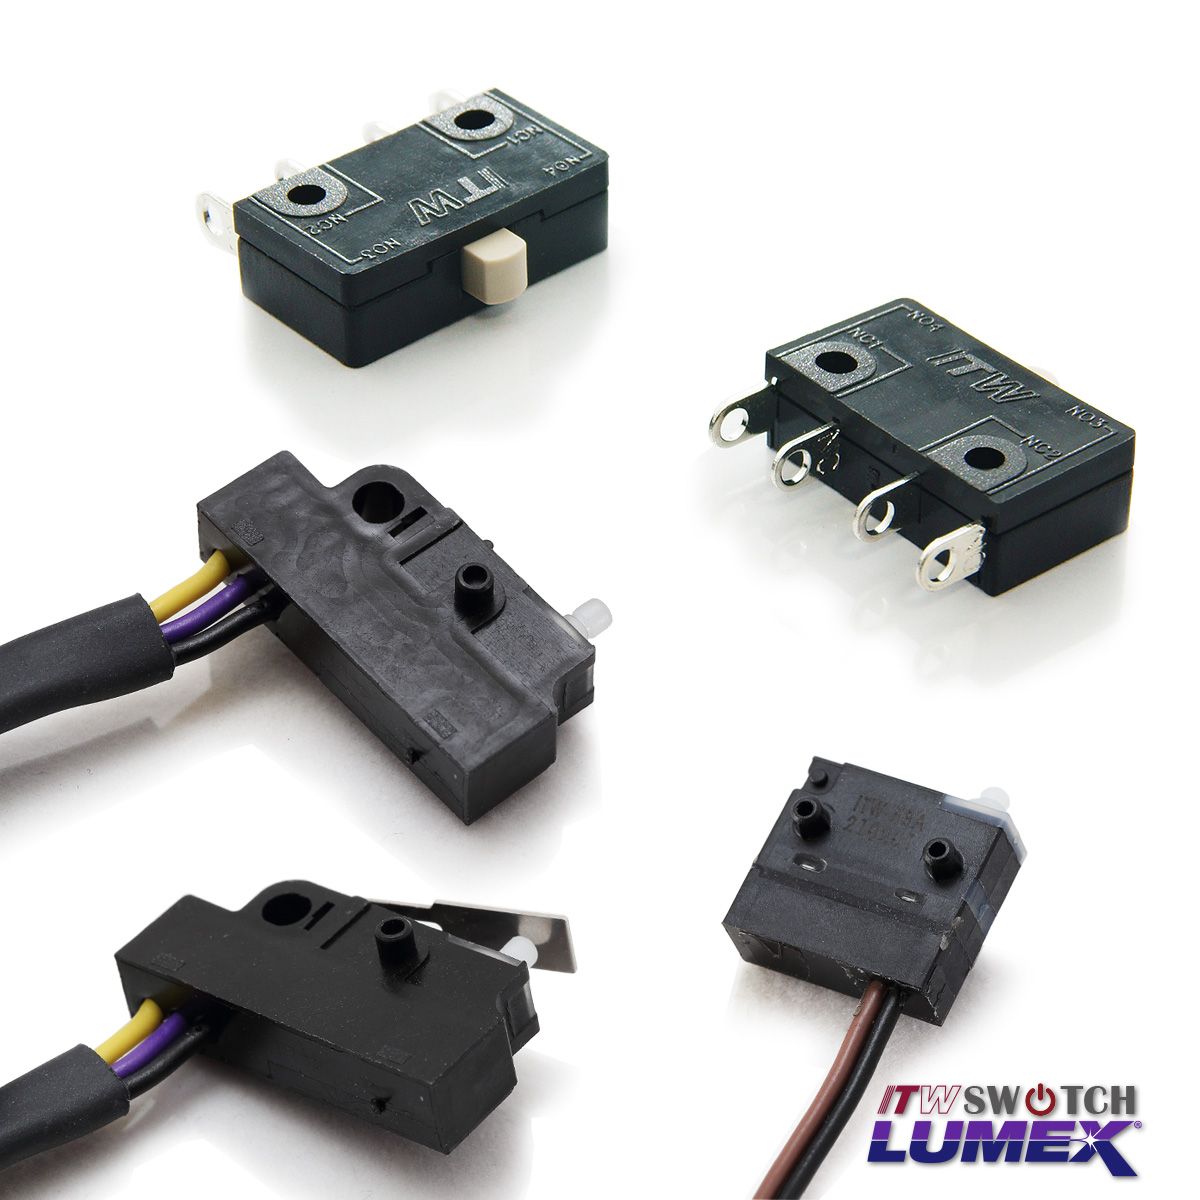 ITW Lumex Switchtillhandahåller Micro Switches som en del av sitt produktutbud.